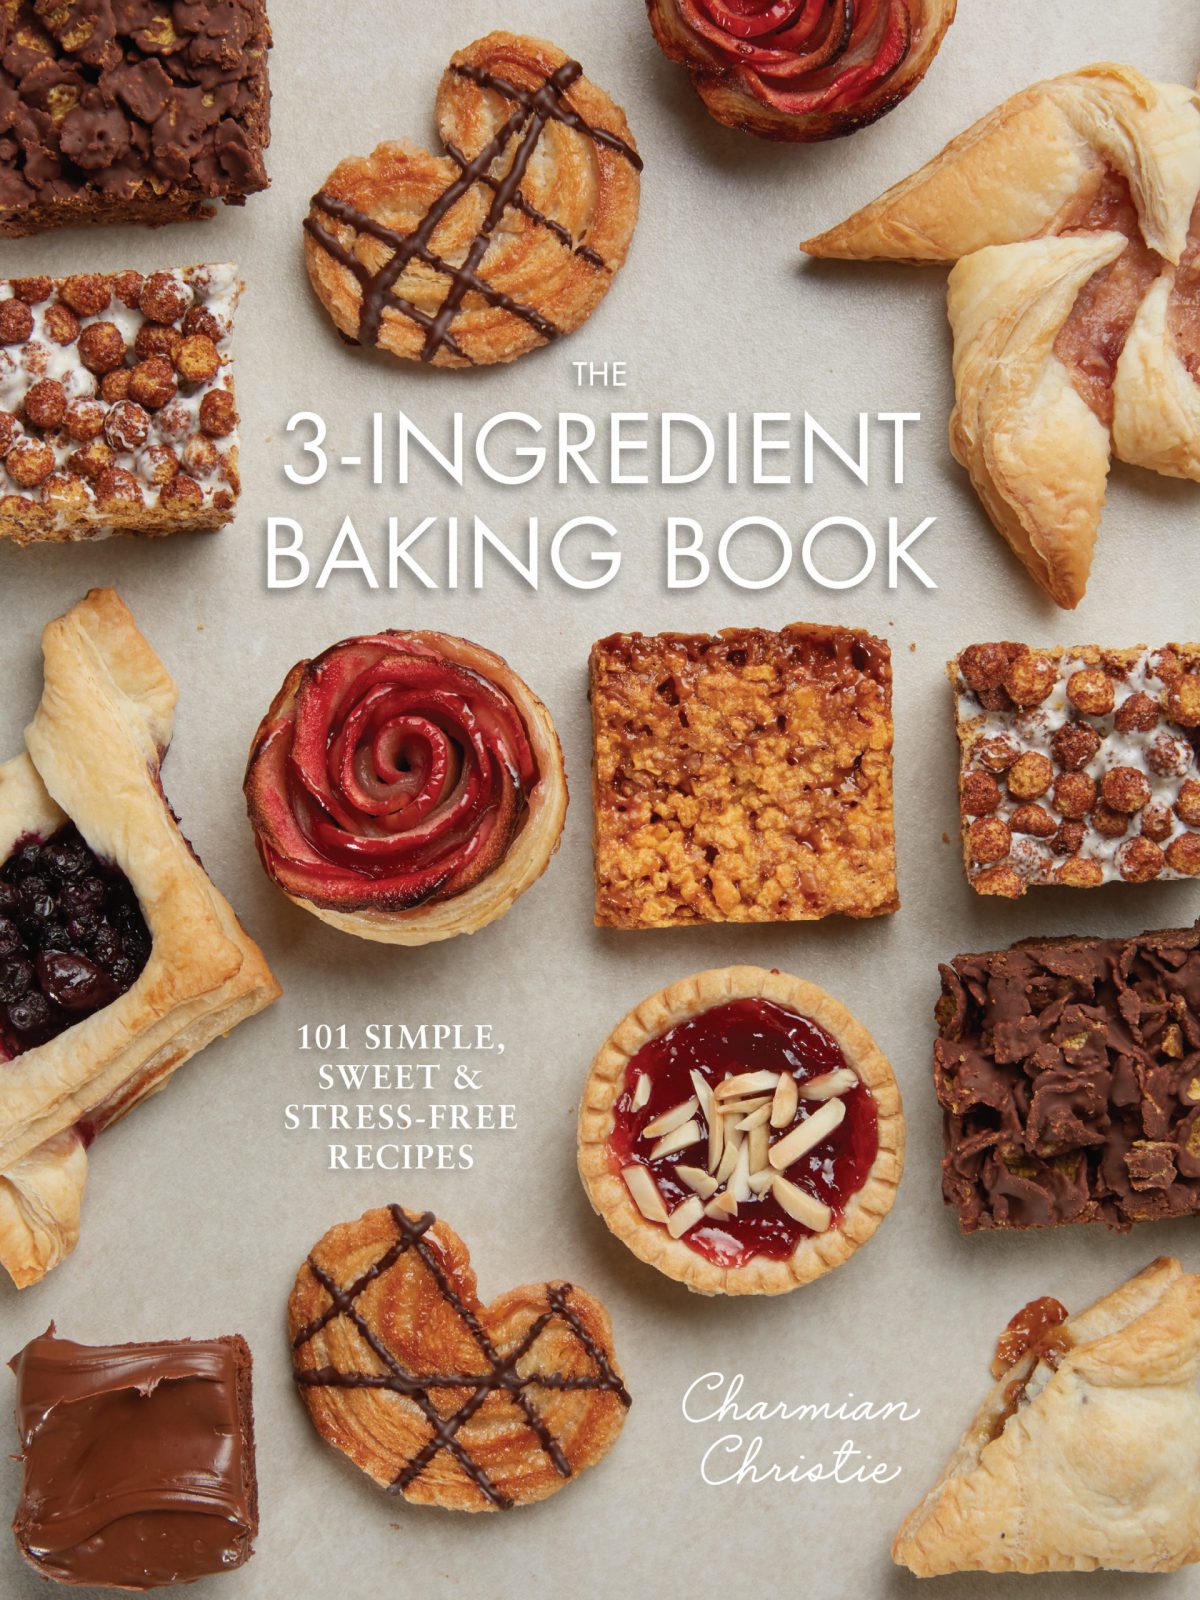 The 3-Ingredient Baking Book